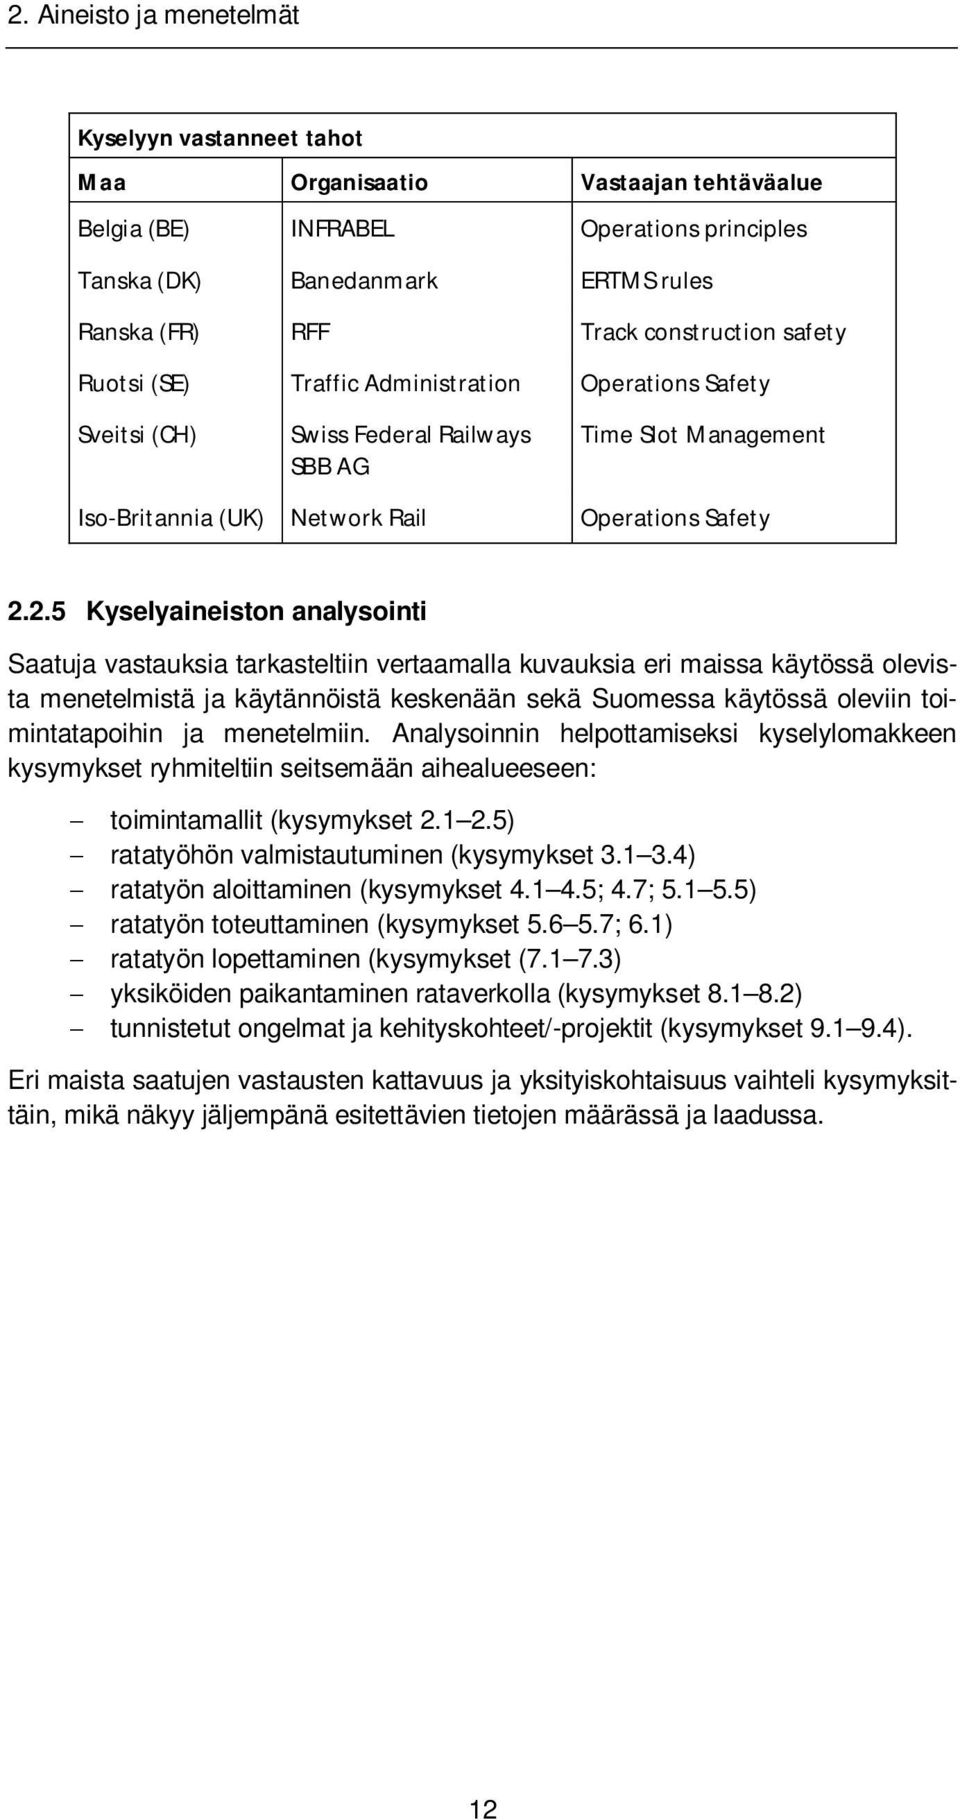 2.5 Kyselyaineiston analysointi Saatuja vastauksia tarkasteltiin vertaamalla kuvauksia eri maissa käytössä olevista menetelmistä ja käytännöistä keskenään sekä Suomessa käytössä oleviin